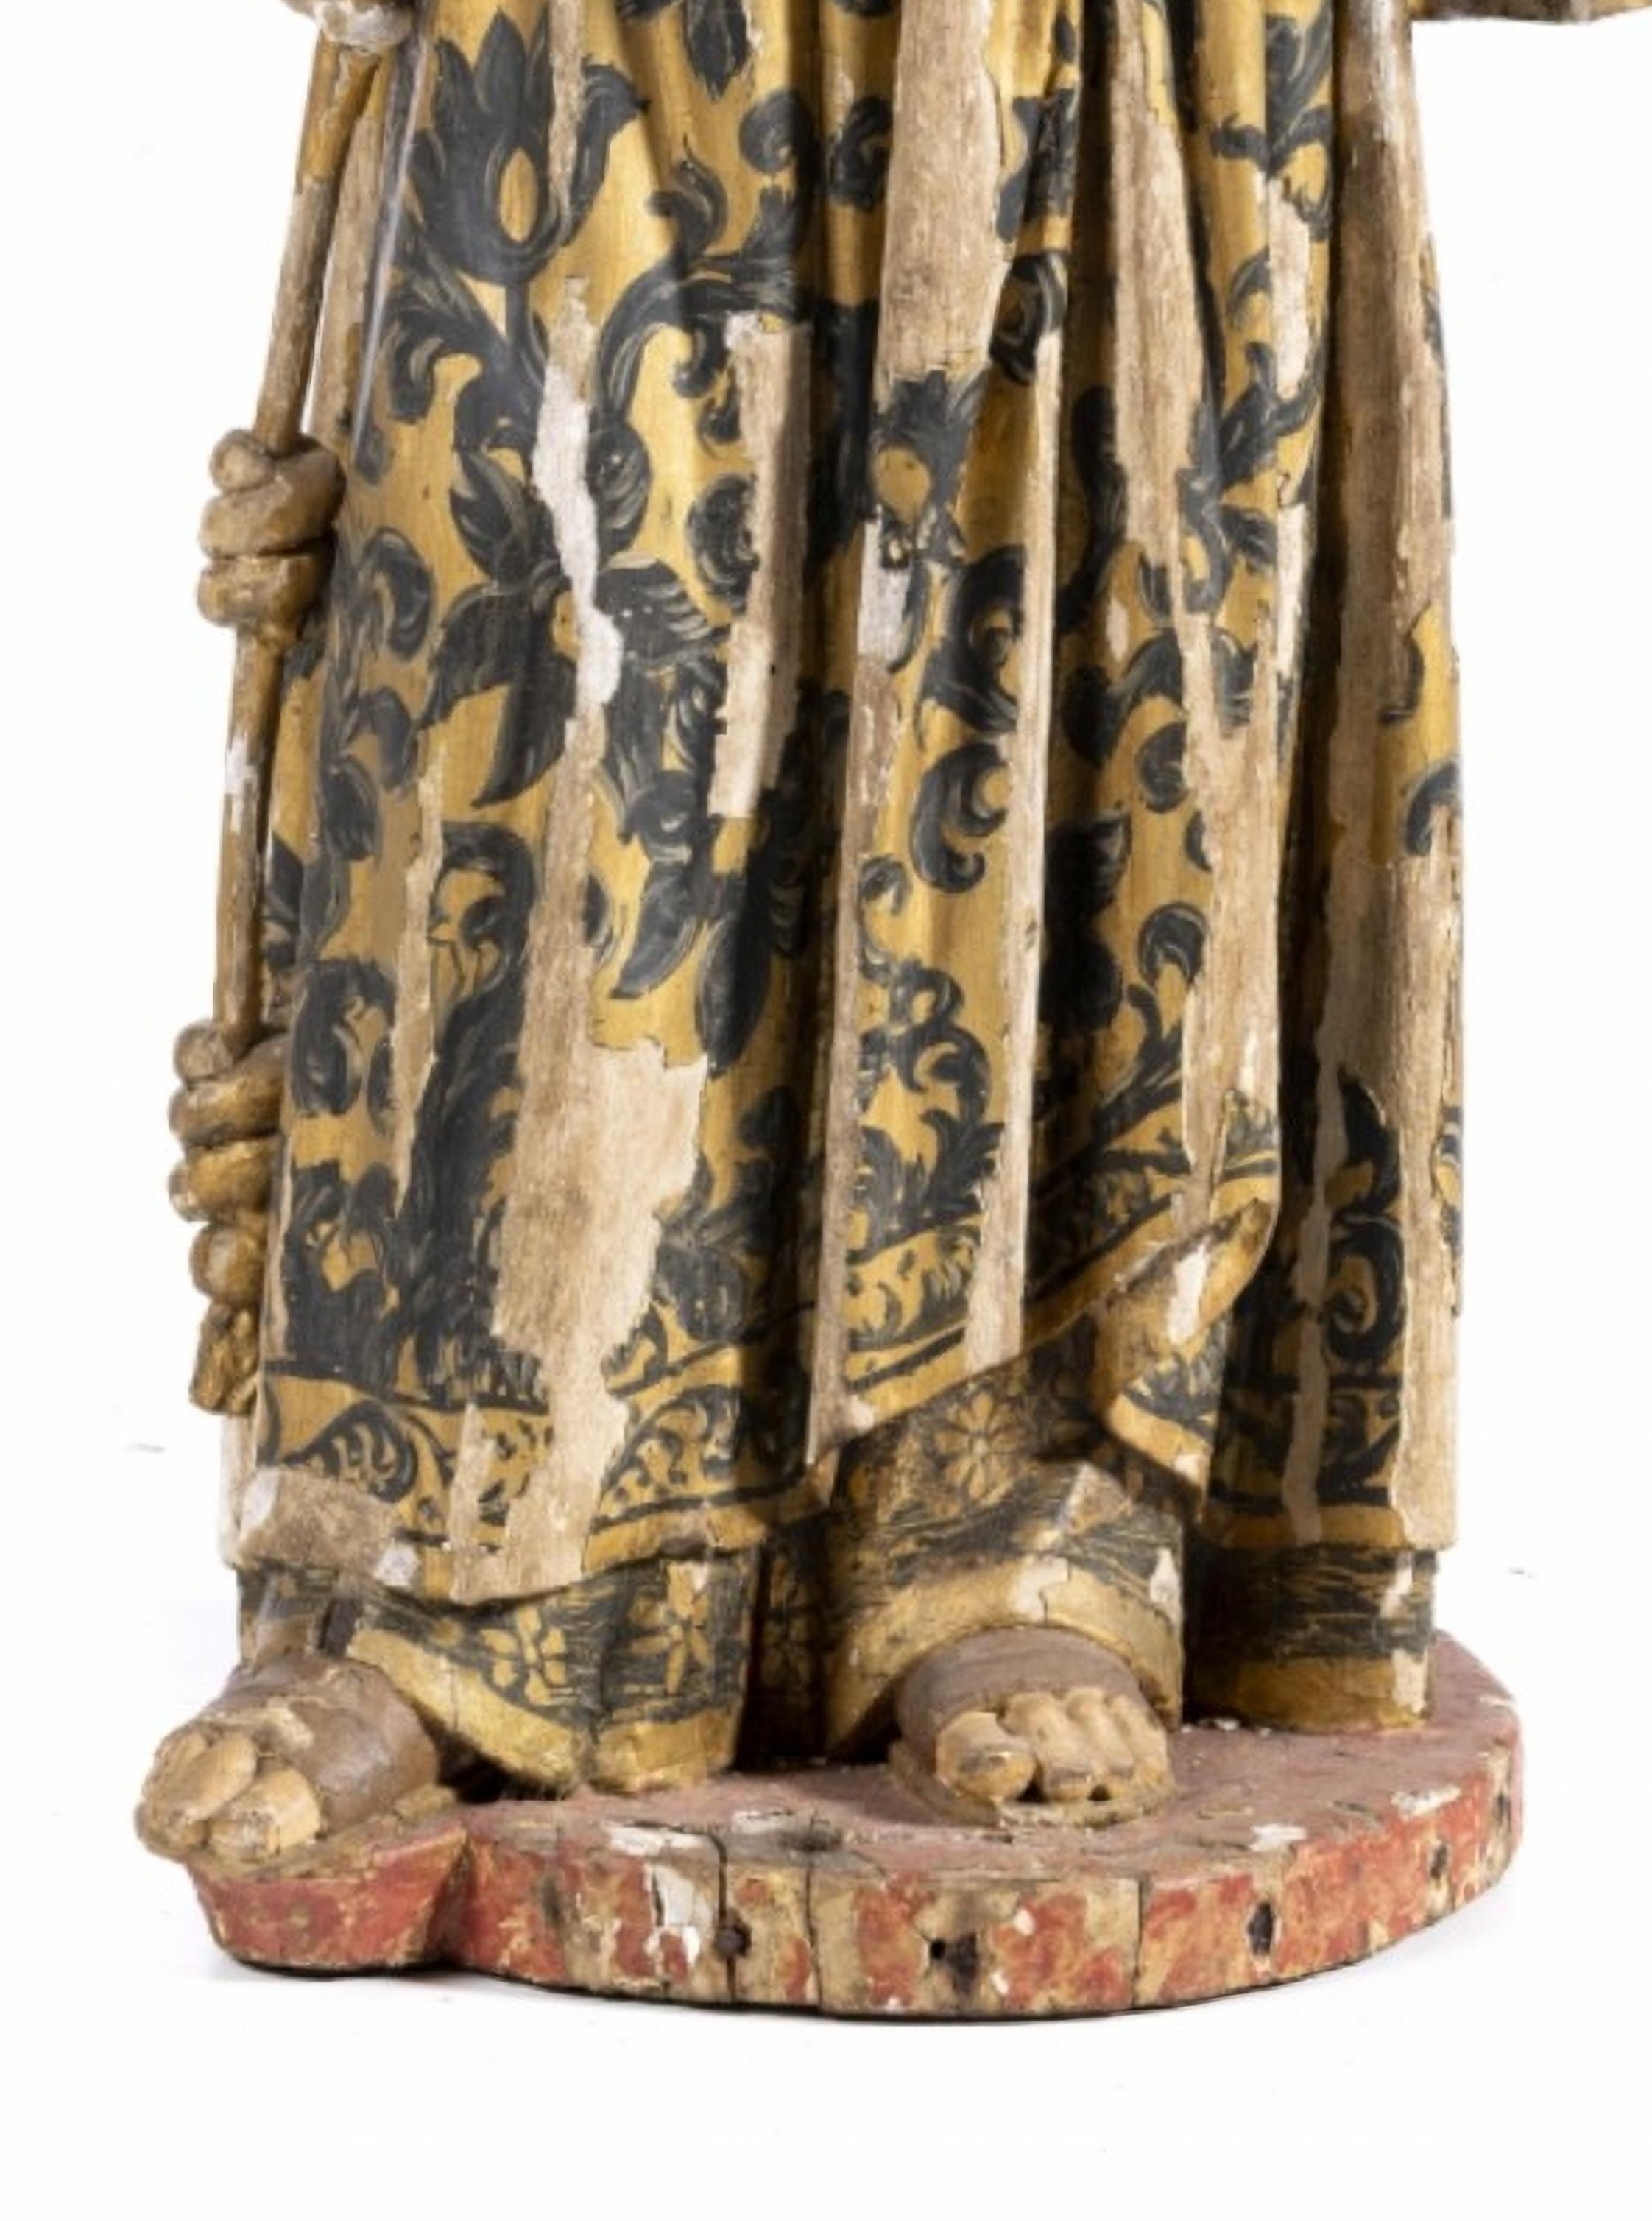 San Antonio con el Niño Jesús, siglo XVIII.

Escultura portuguesa en madera policromada y dorada, del siglo XVII.
La figura se representa de pie, sujetando el libro con la mano izquierda. 
Faltas y defectos.
Dimensiones: 92 x 42 cm.